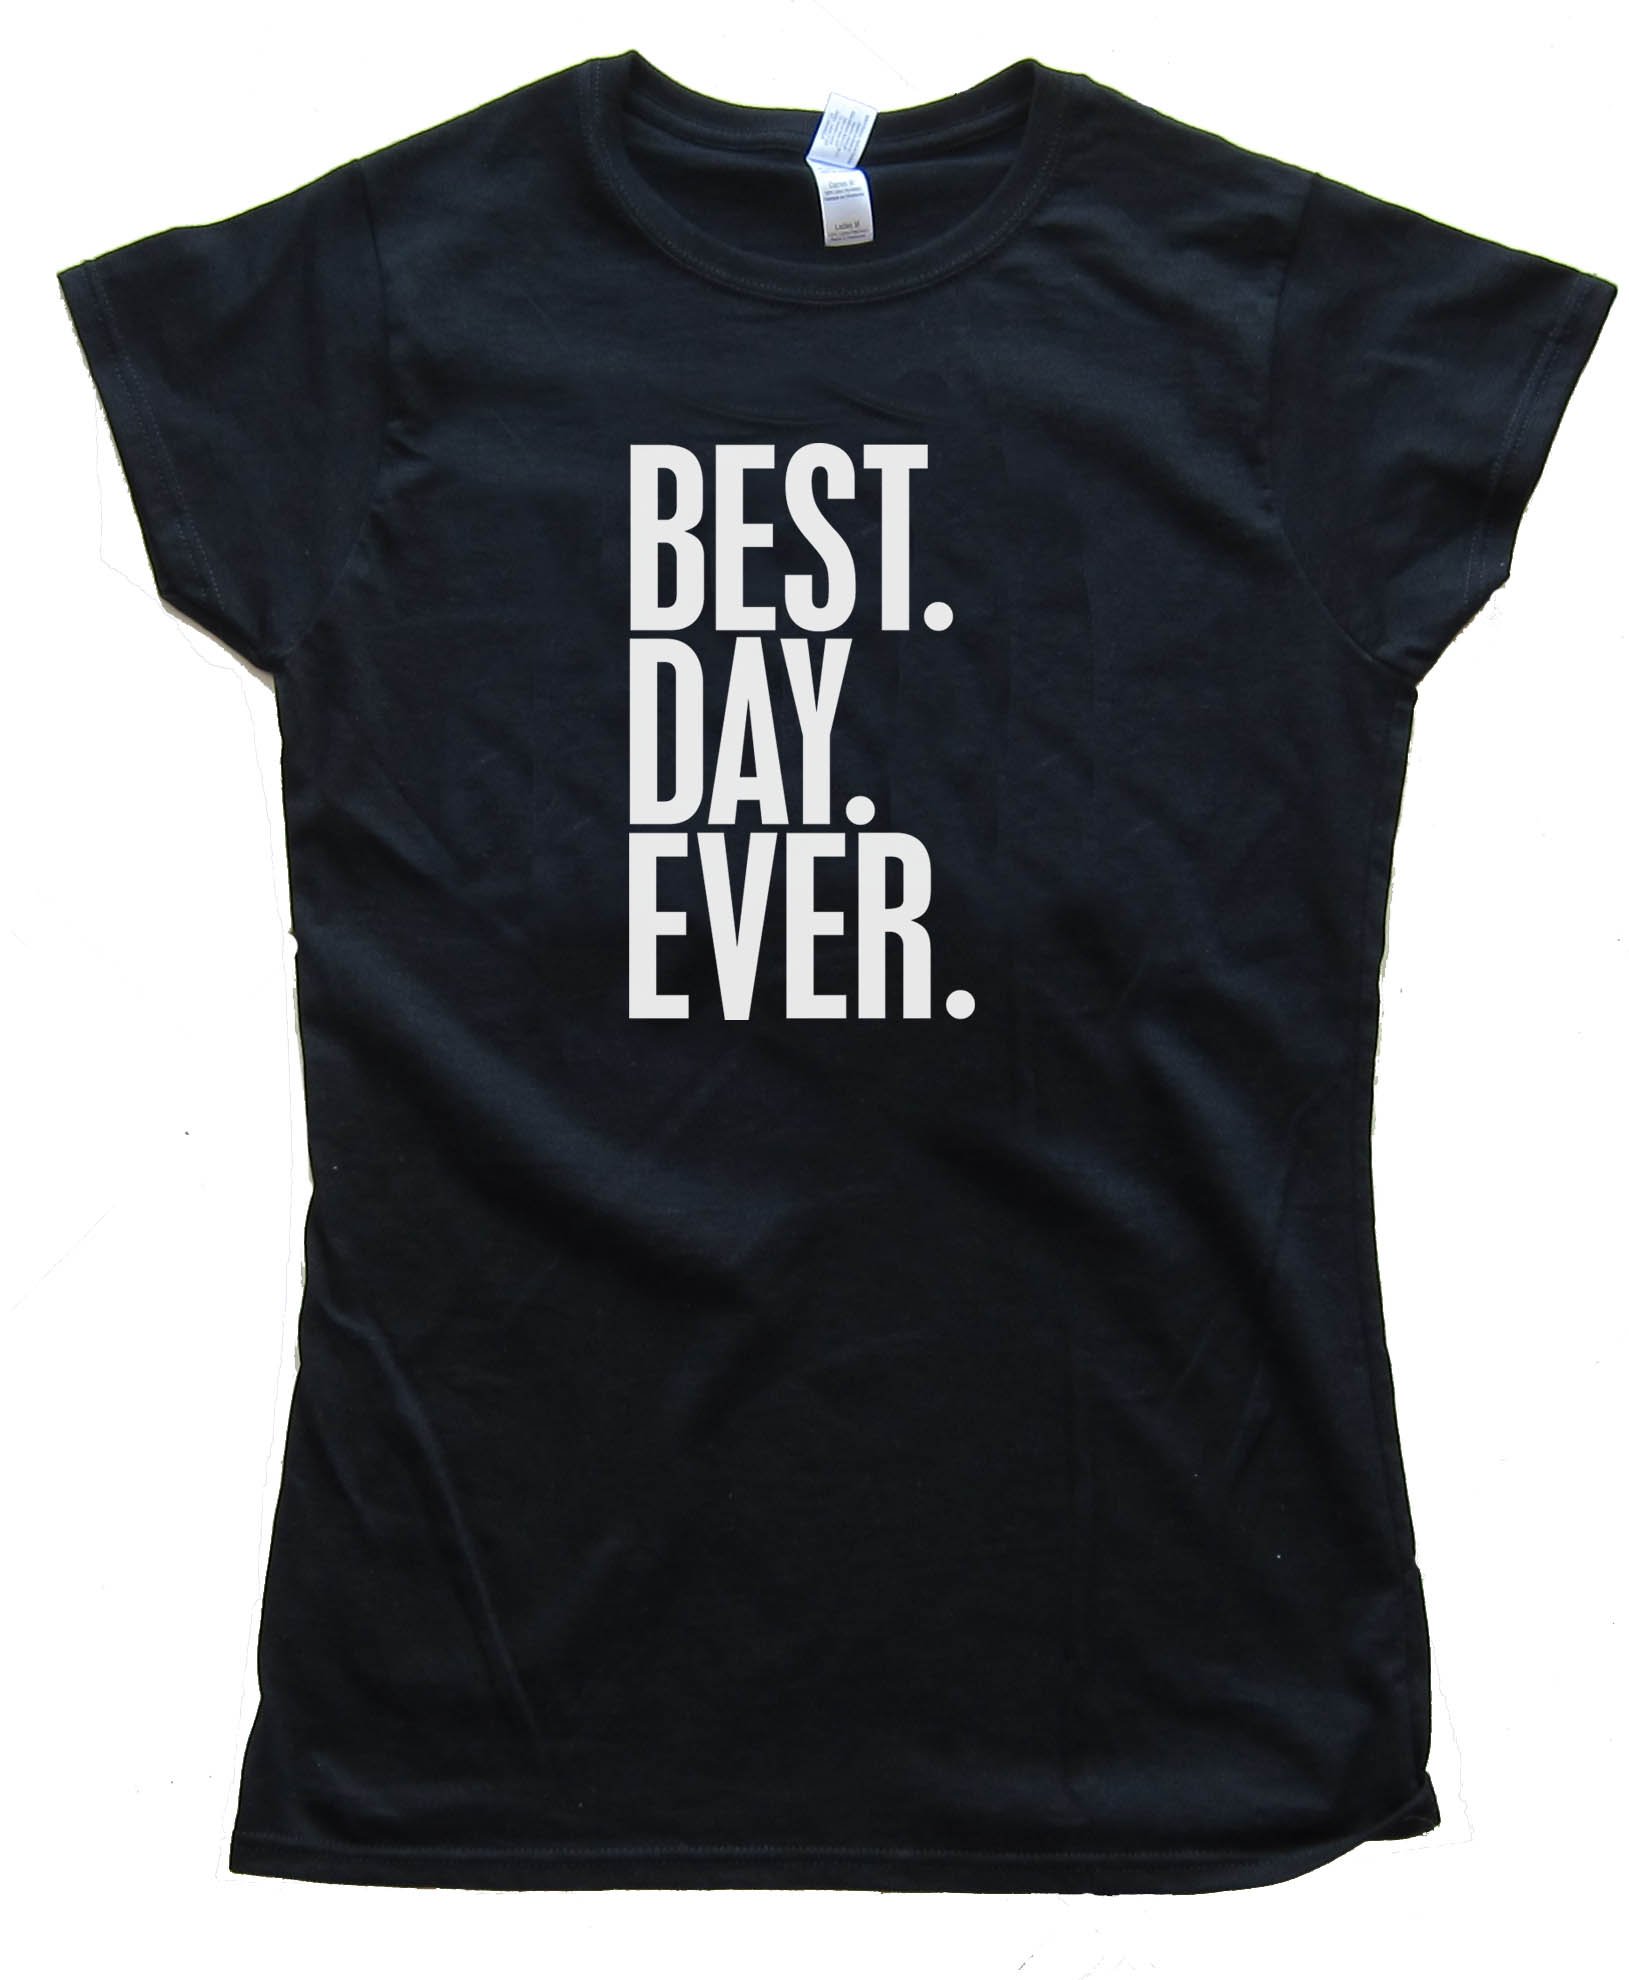 Womens Best. Day. Ever. - Tee Shirt